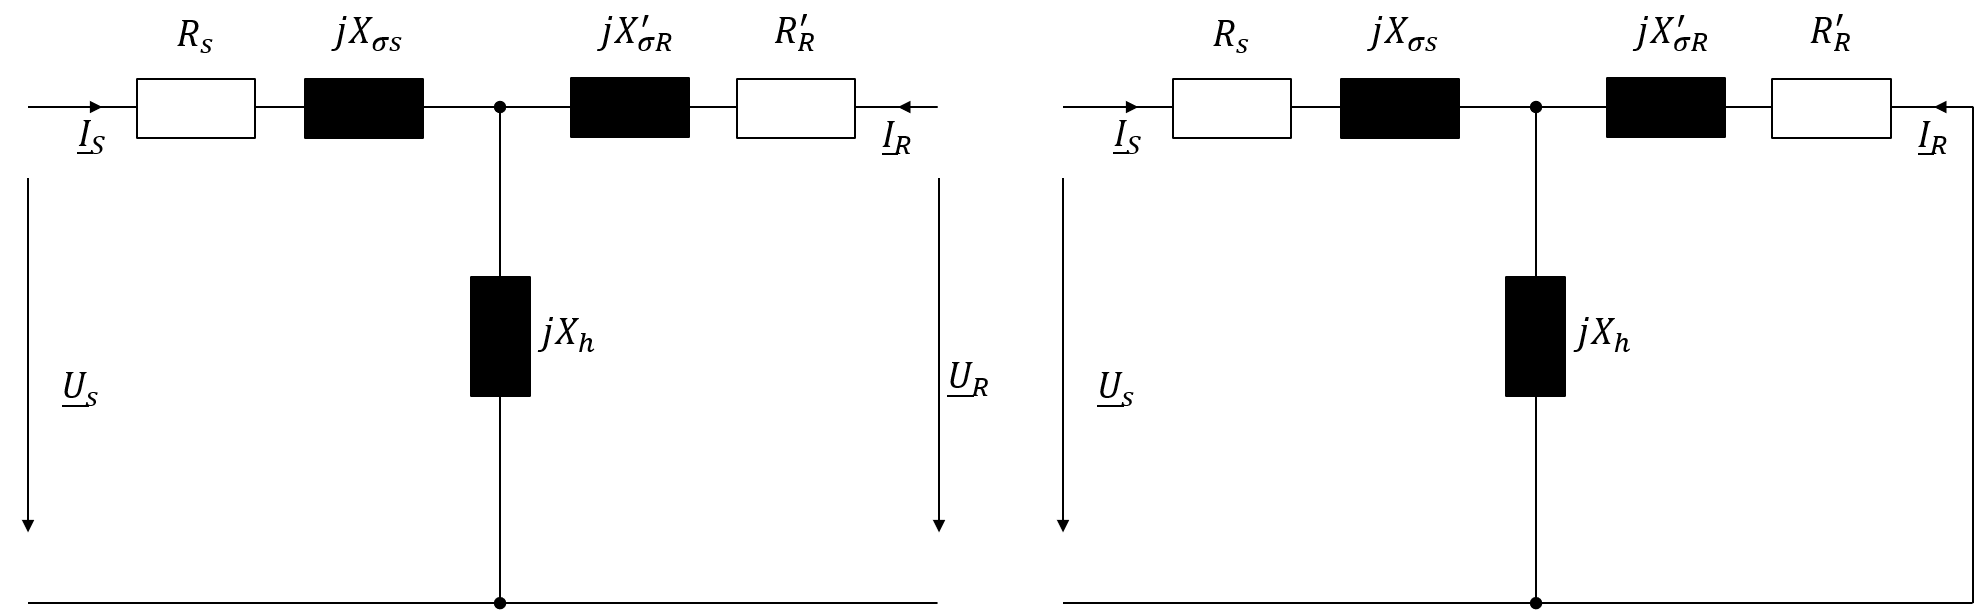 T-Ersatzschaltbild der stillstehenden ASM (links: mit herausgeführten Rotorwicklungen, rechts: mit Kurzschlusskäfig)